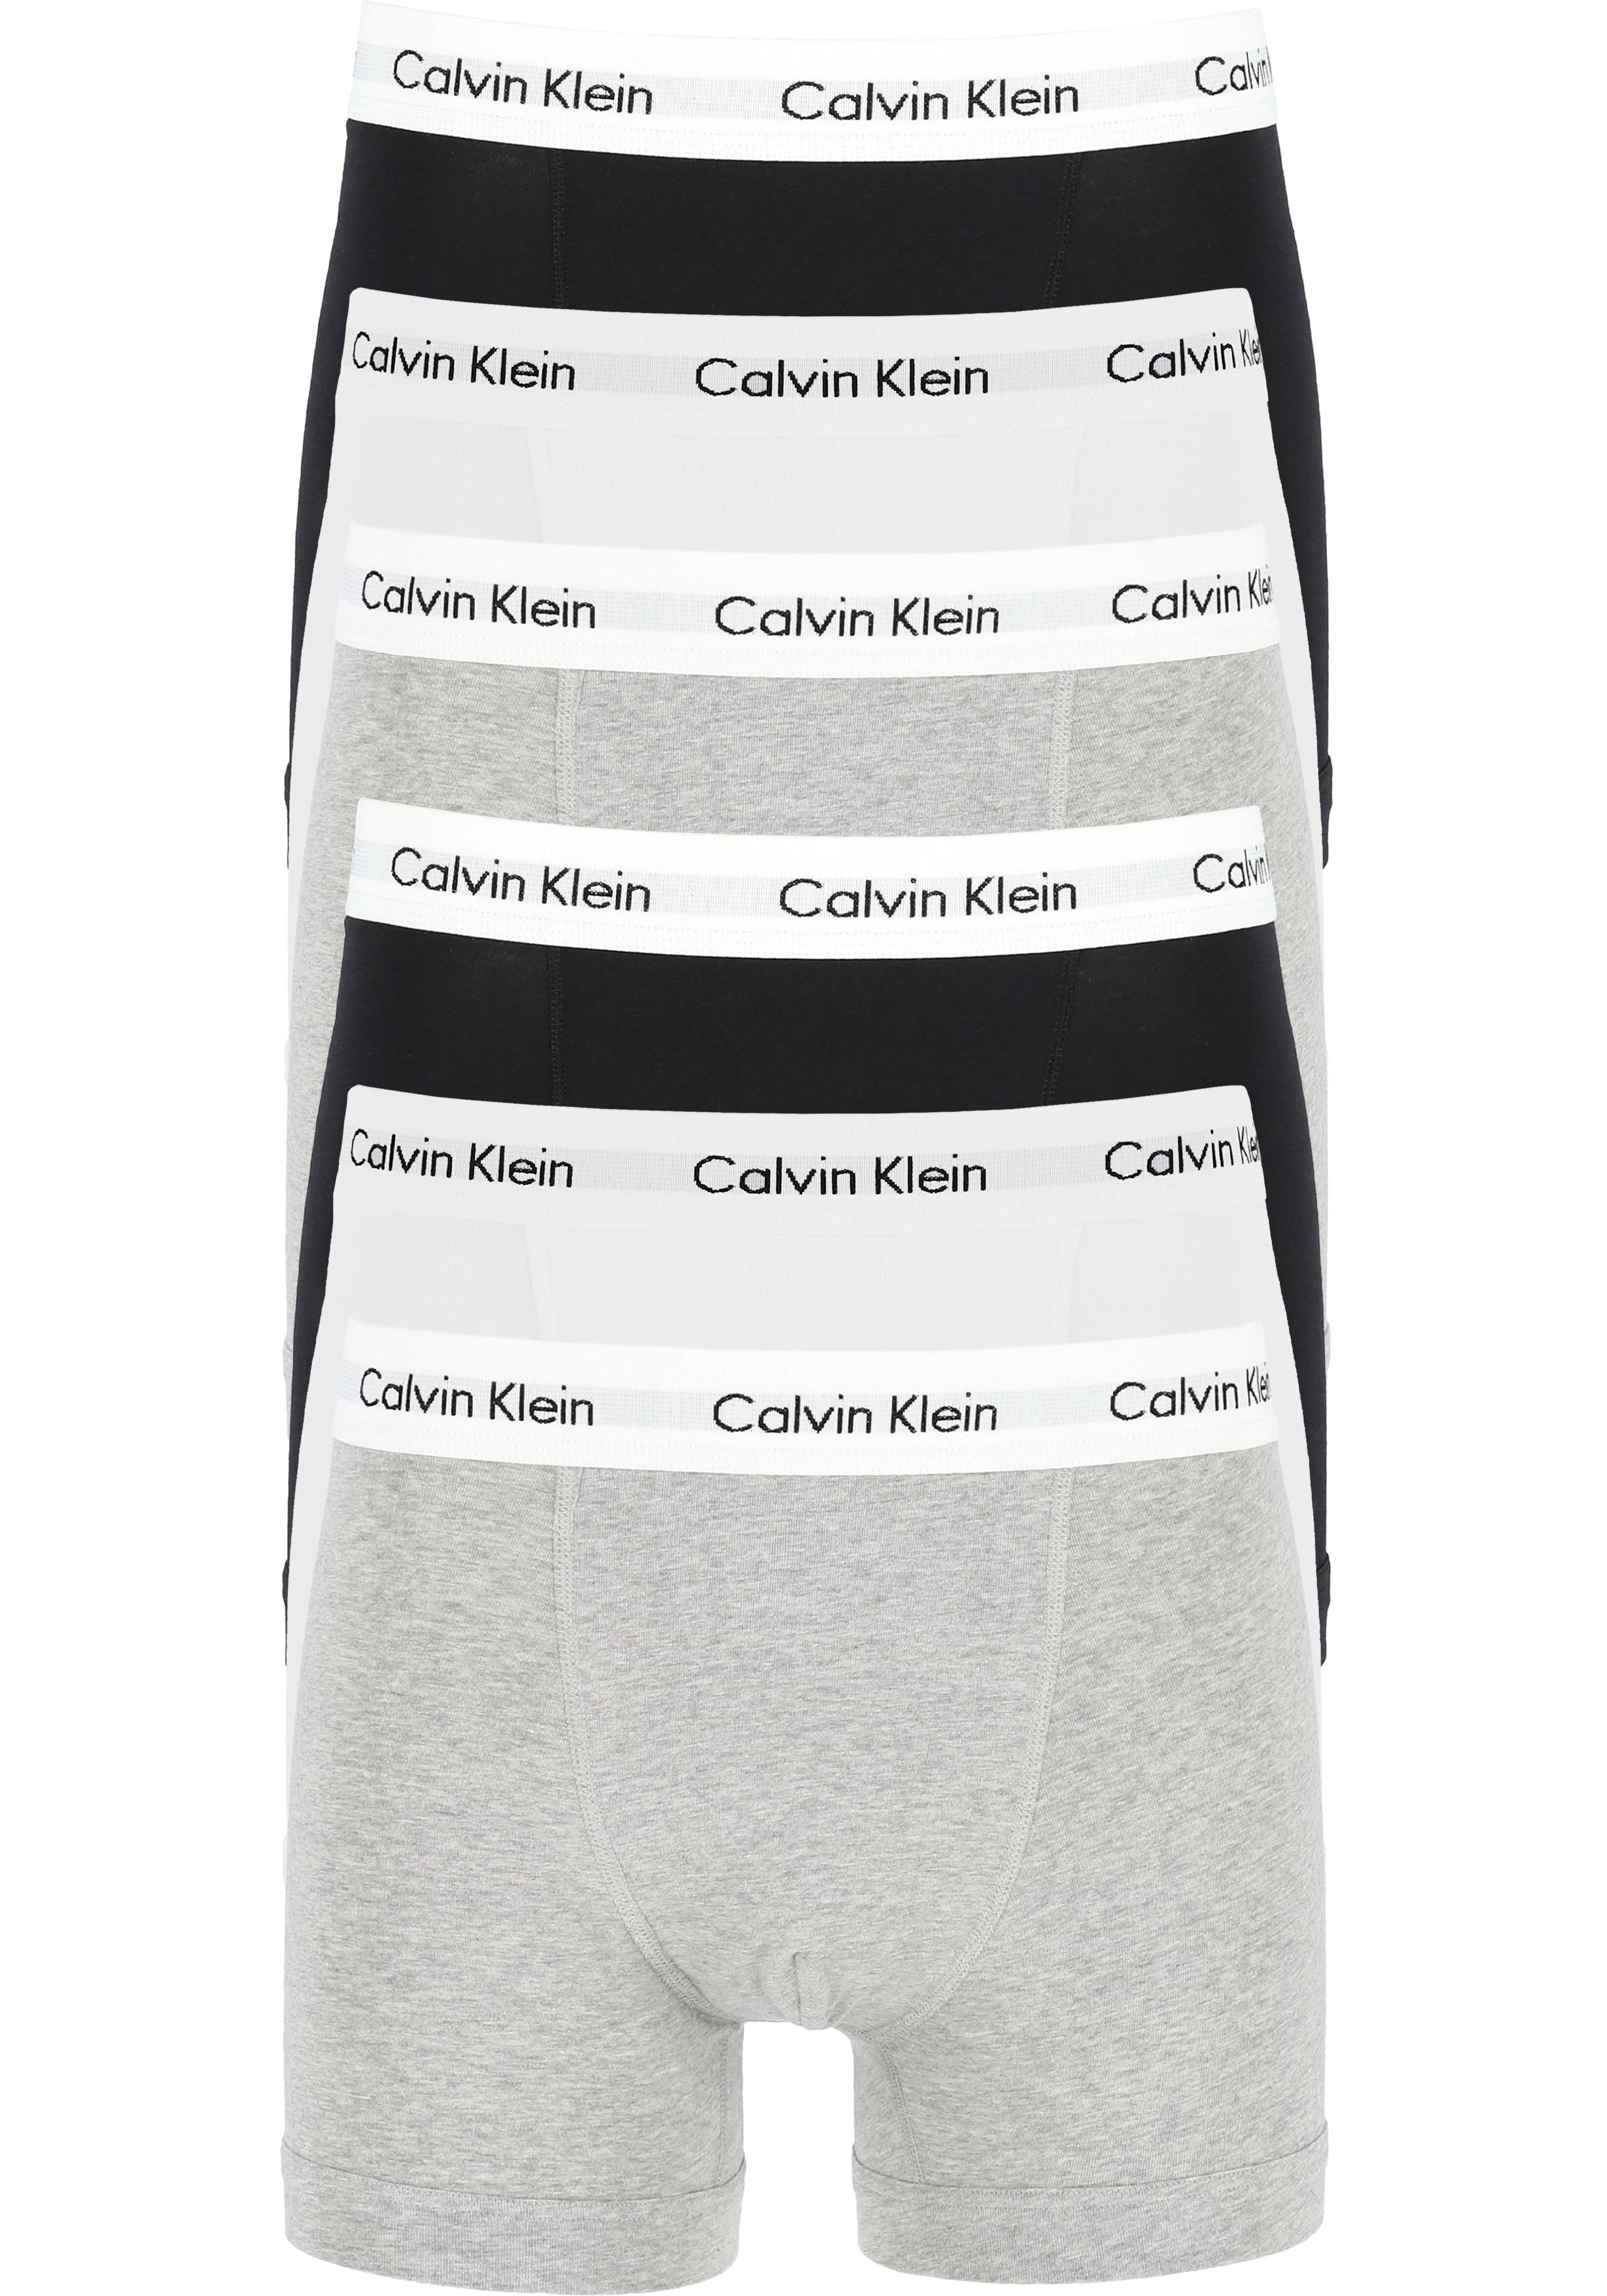 huren staking Tot ziens Actie 6-pack: Calvin Klein trunks, heren boxers normale lengte, zwart,... -  Shop de nieuwste voorjaarsmode